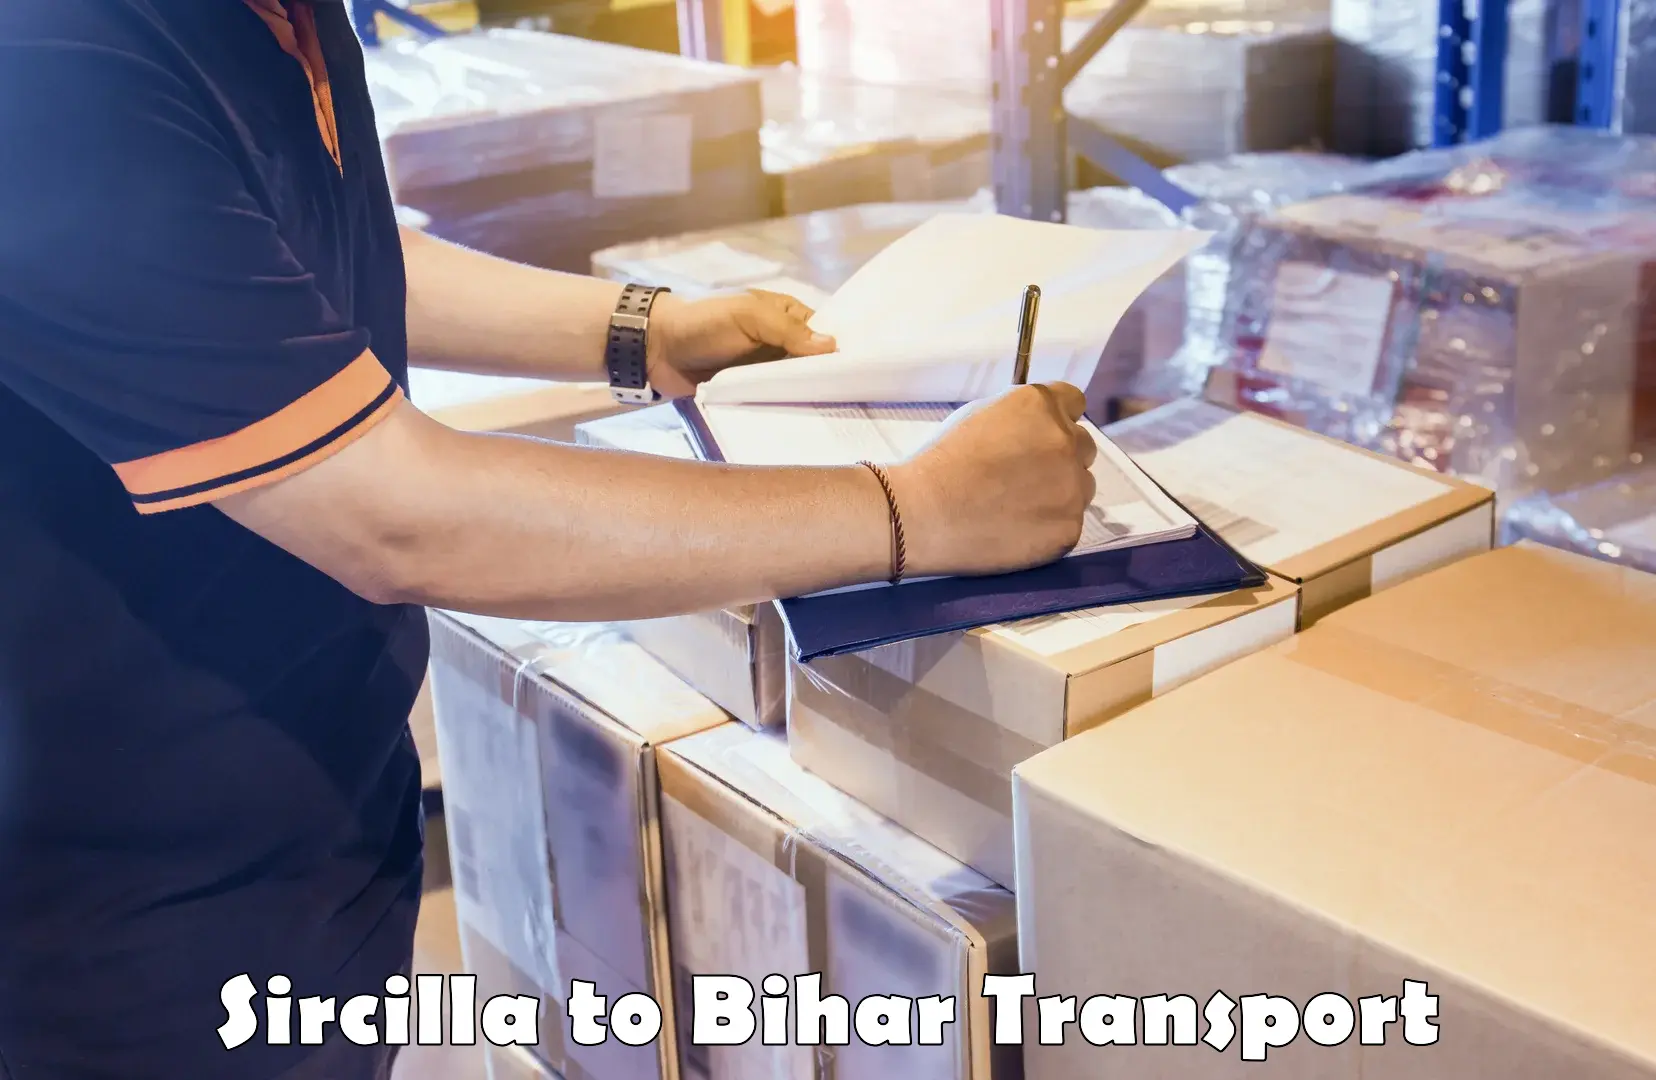 Furniture transport service Sircilla to Malmaliya